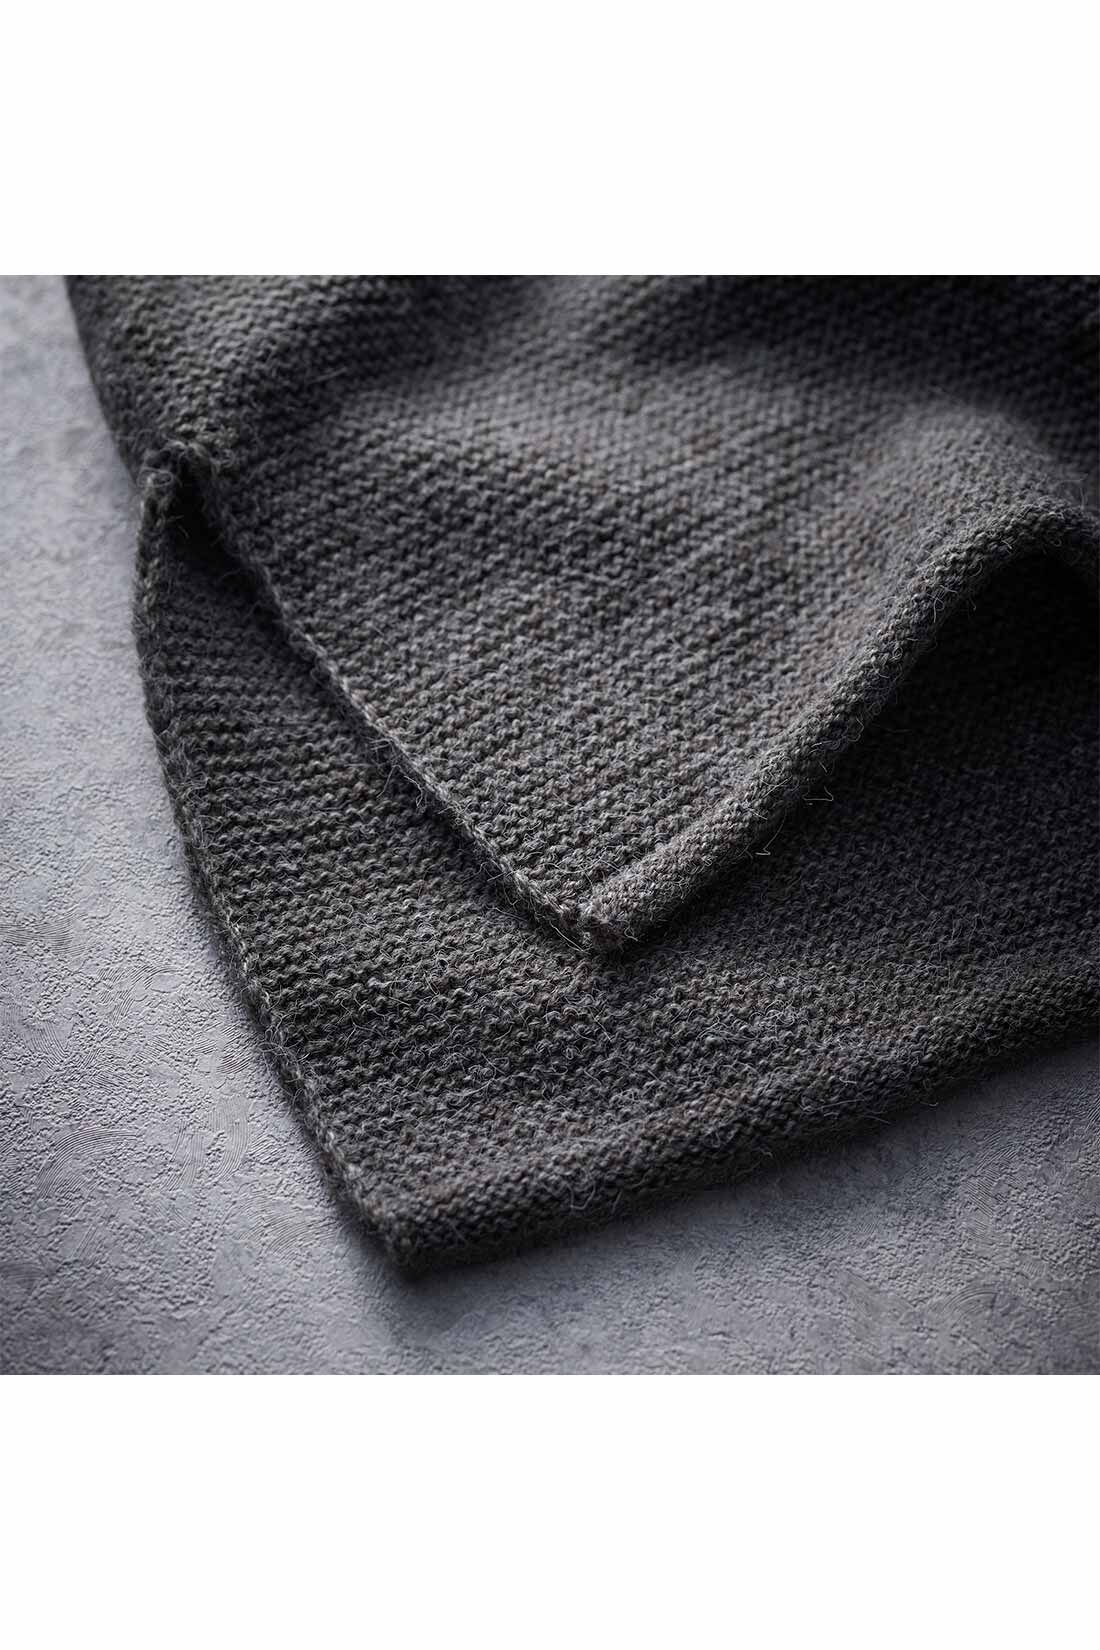 IEDIT[イディット]　ガーター編みのラフシルエットニットベスト|くるんとさせた衿ぐりとすそは、カットアウト風でこなれ感を表現。両わきのスリットで抜け感と動きをつけて。